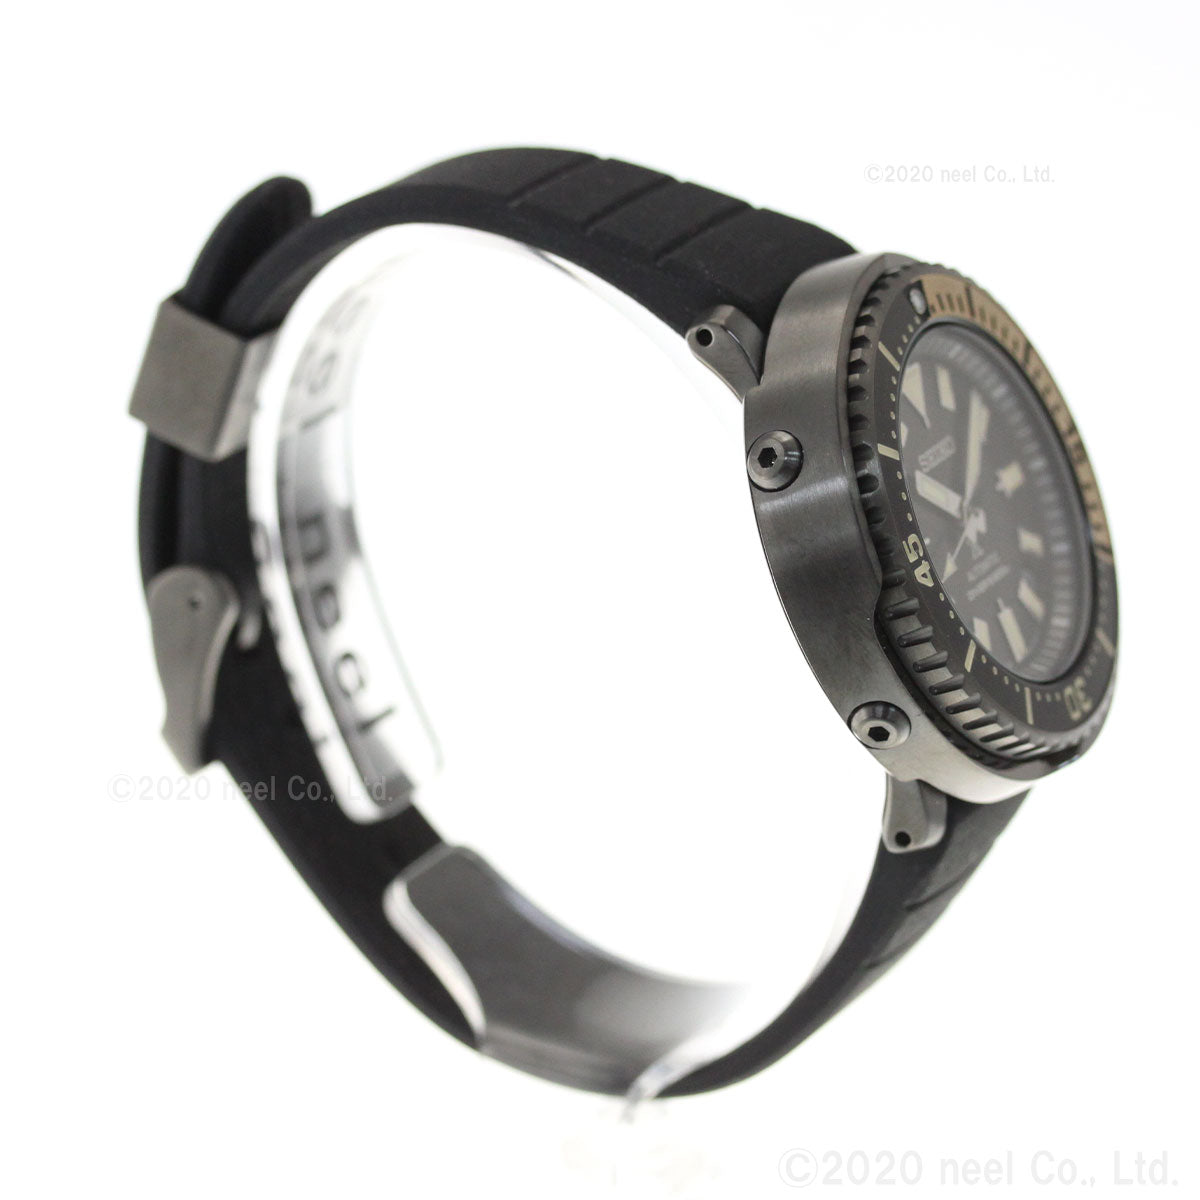 セイコー プロスペックス SEIKO PROSPEX ダイバースキューバ メカニカル 自動巻き ショップ限定 流通限定モデル 腕時計 メンズ ストリート Street Series SBDY091